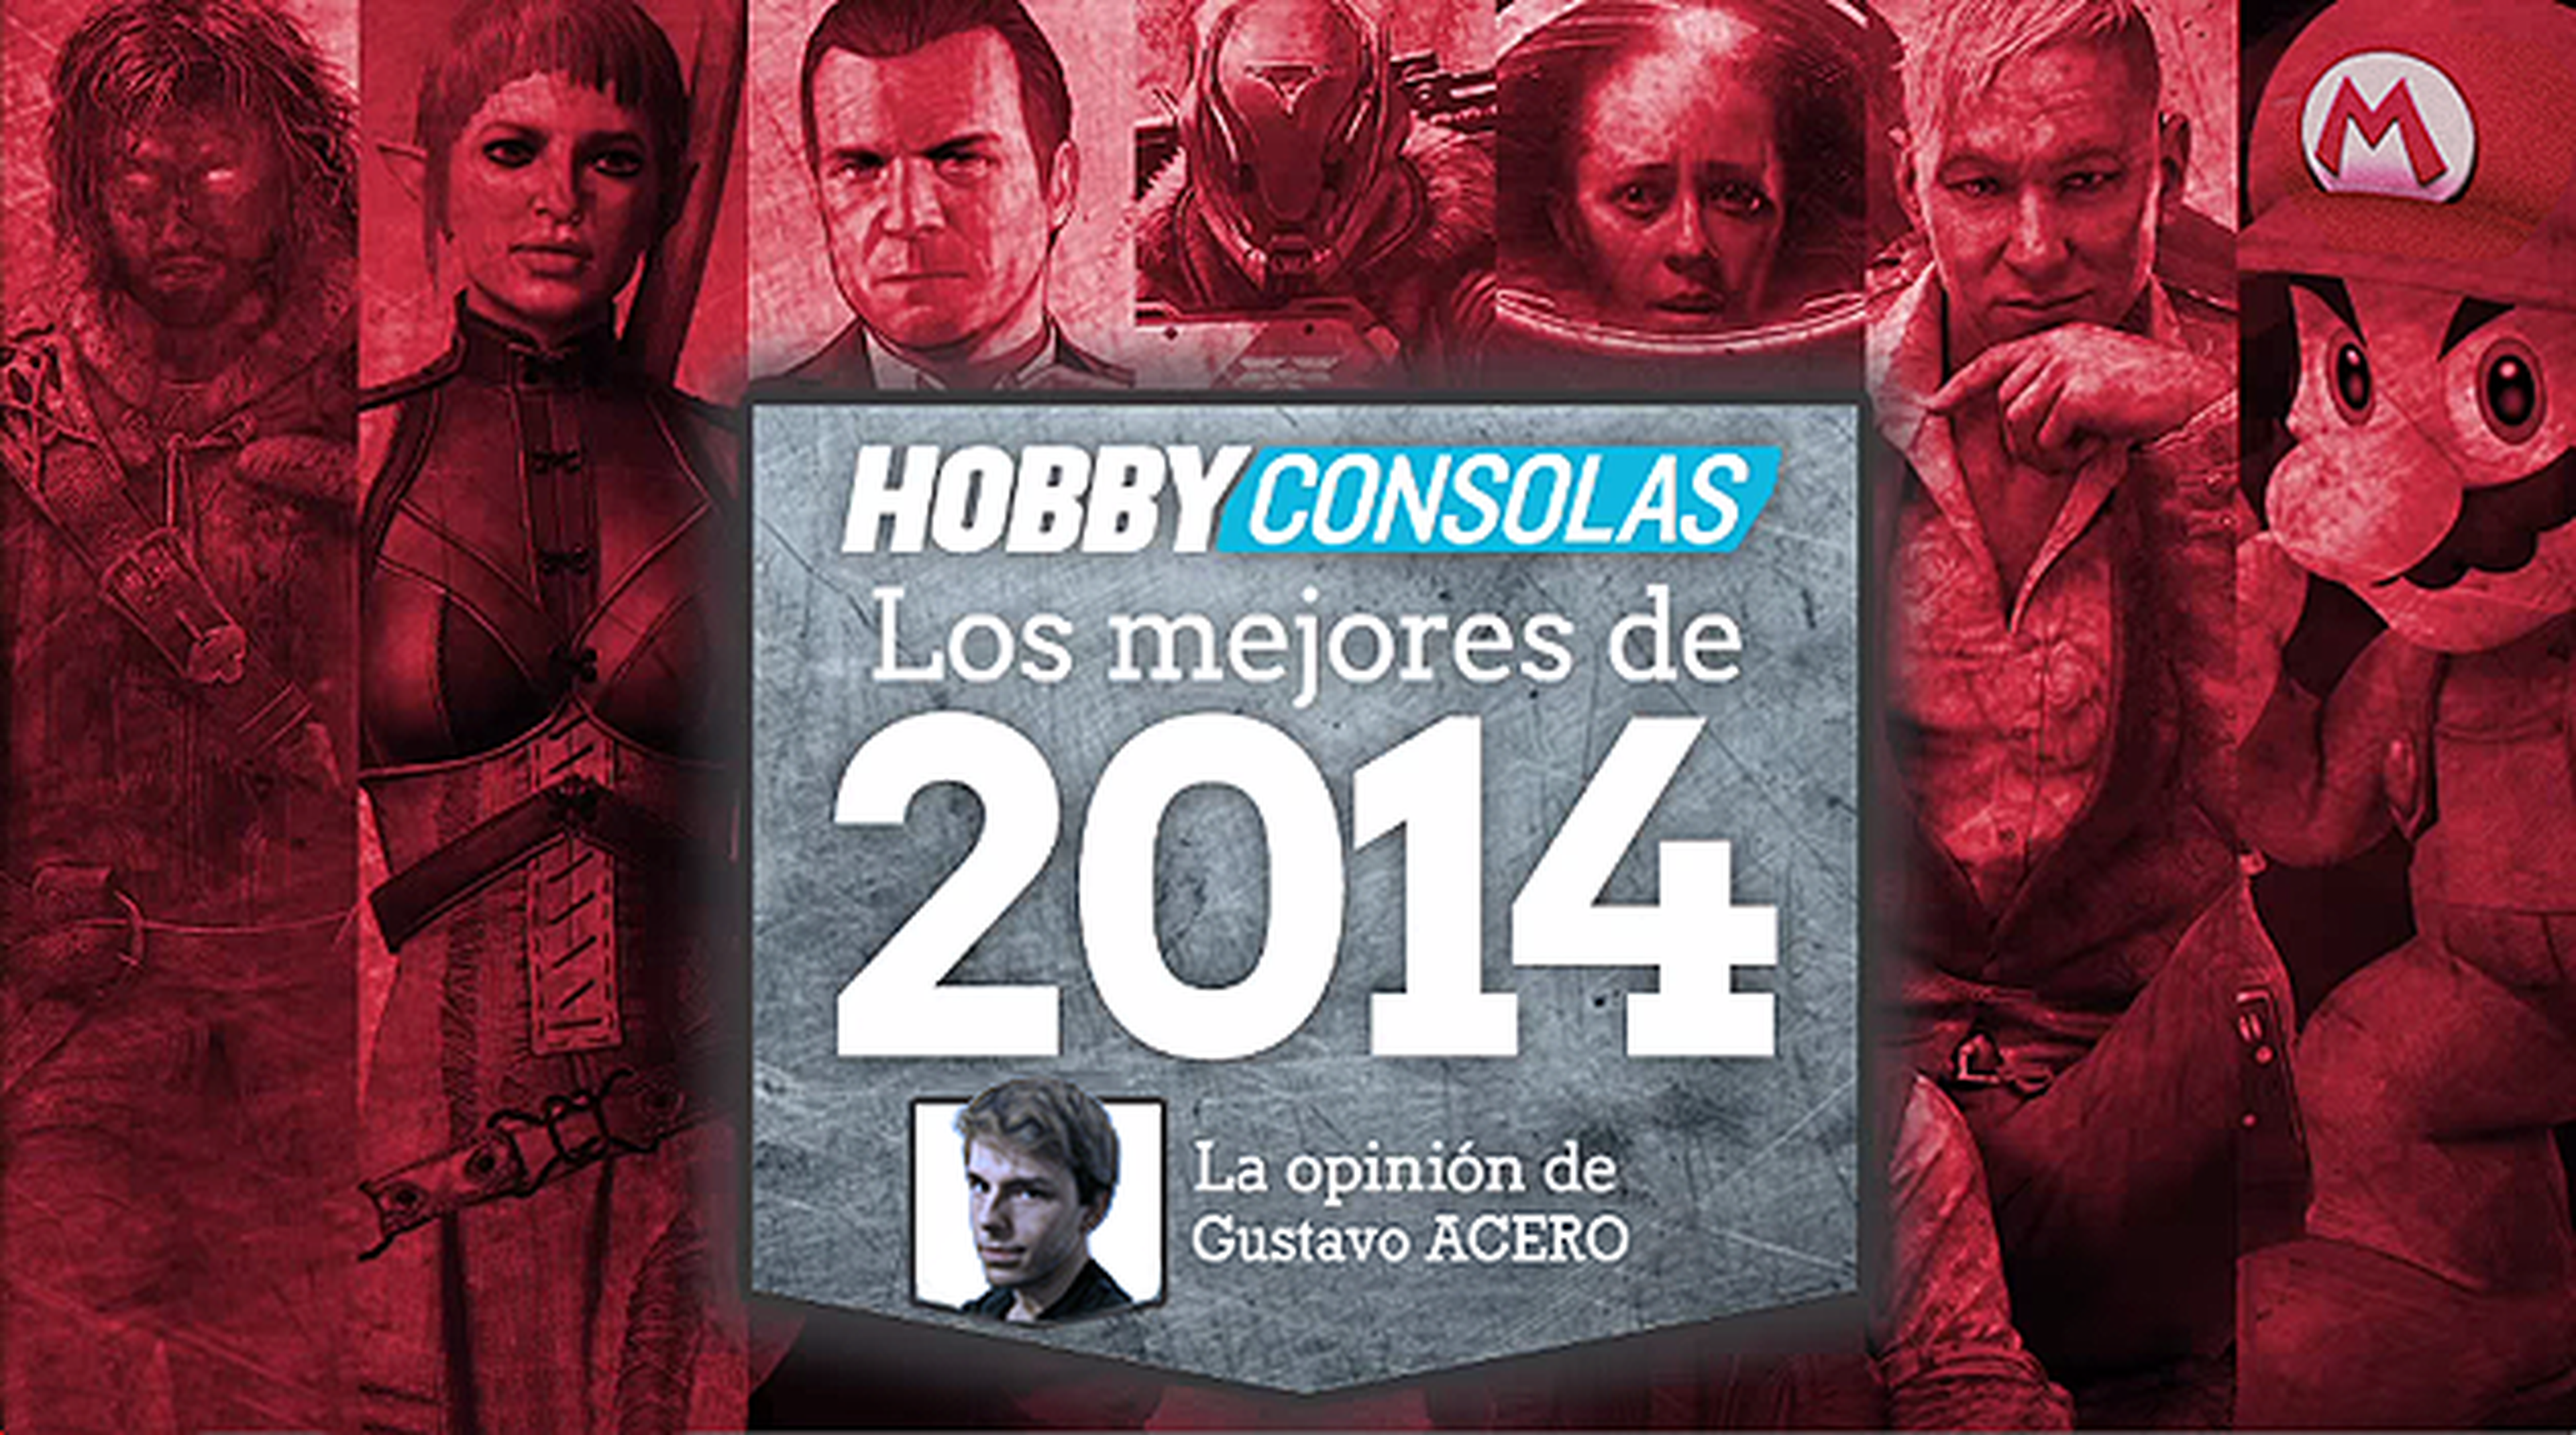 Los mejores juegos de 2014: La opinión de Gustavo Acero